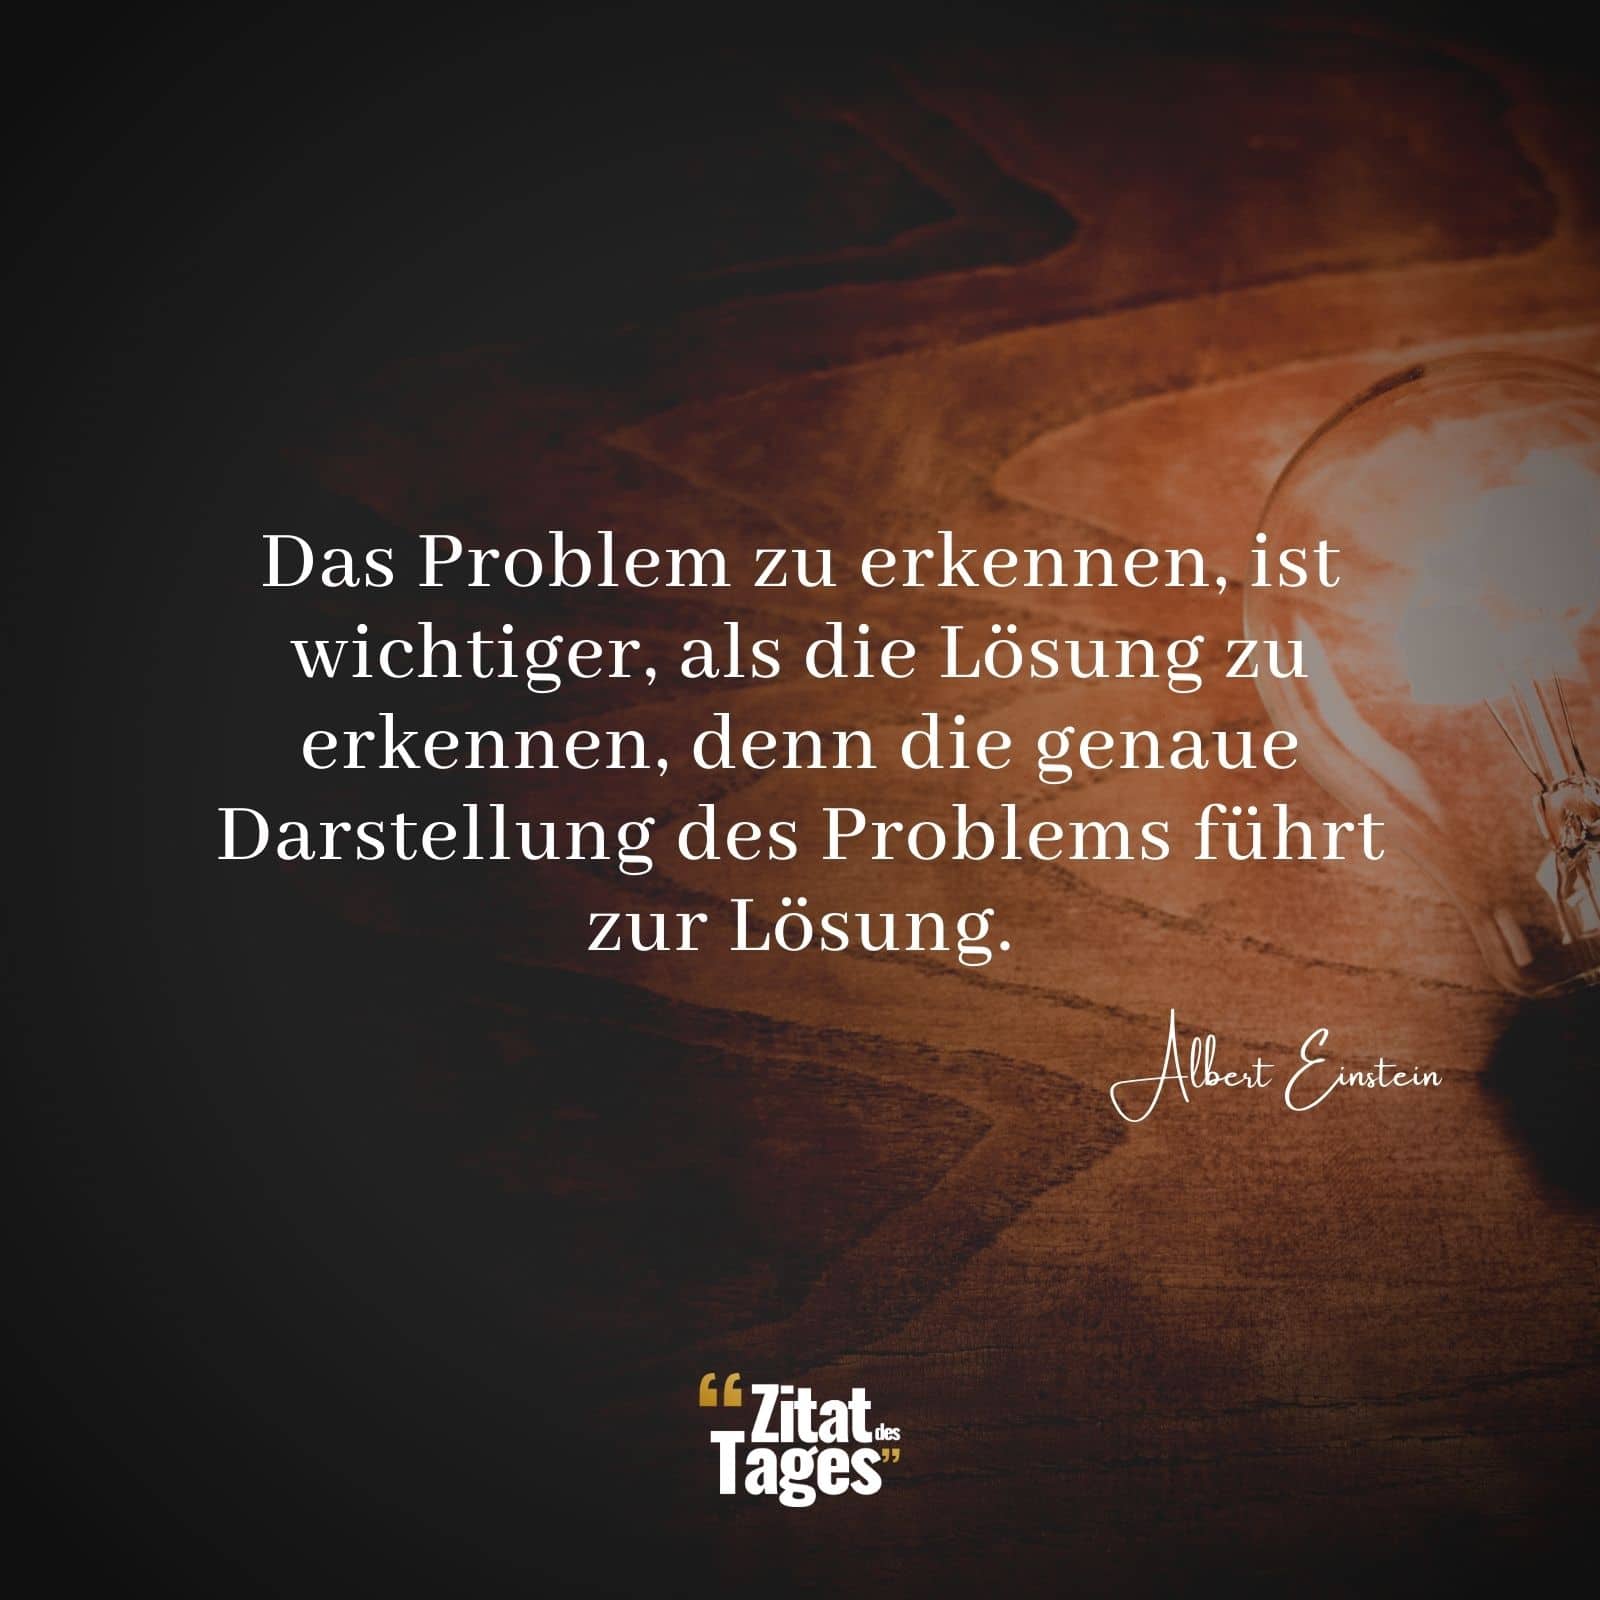 Das Problem zu erkennen, ist wichtiger, als die Lösung zu erkennen, denn die genaue Darstellung des Problems führt zur Lösung. - Albert Einstein